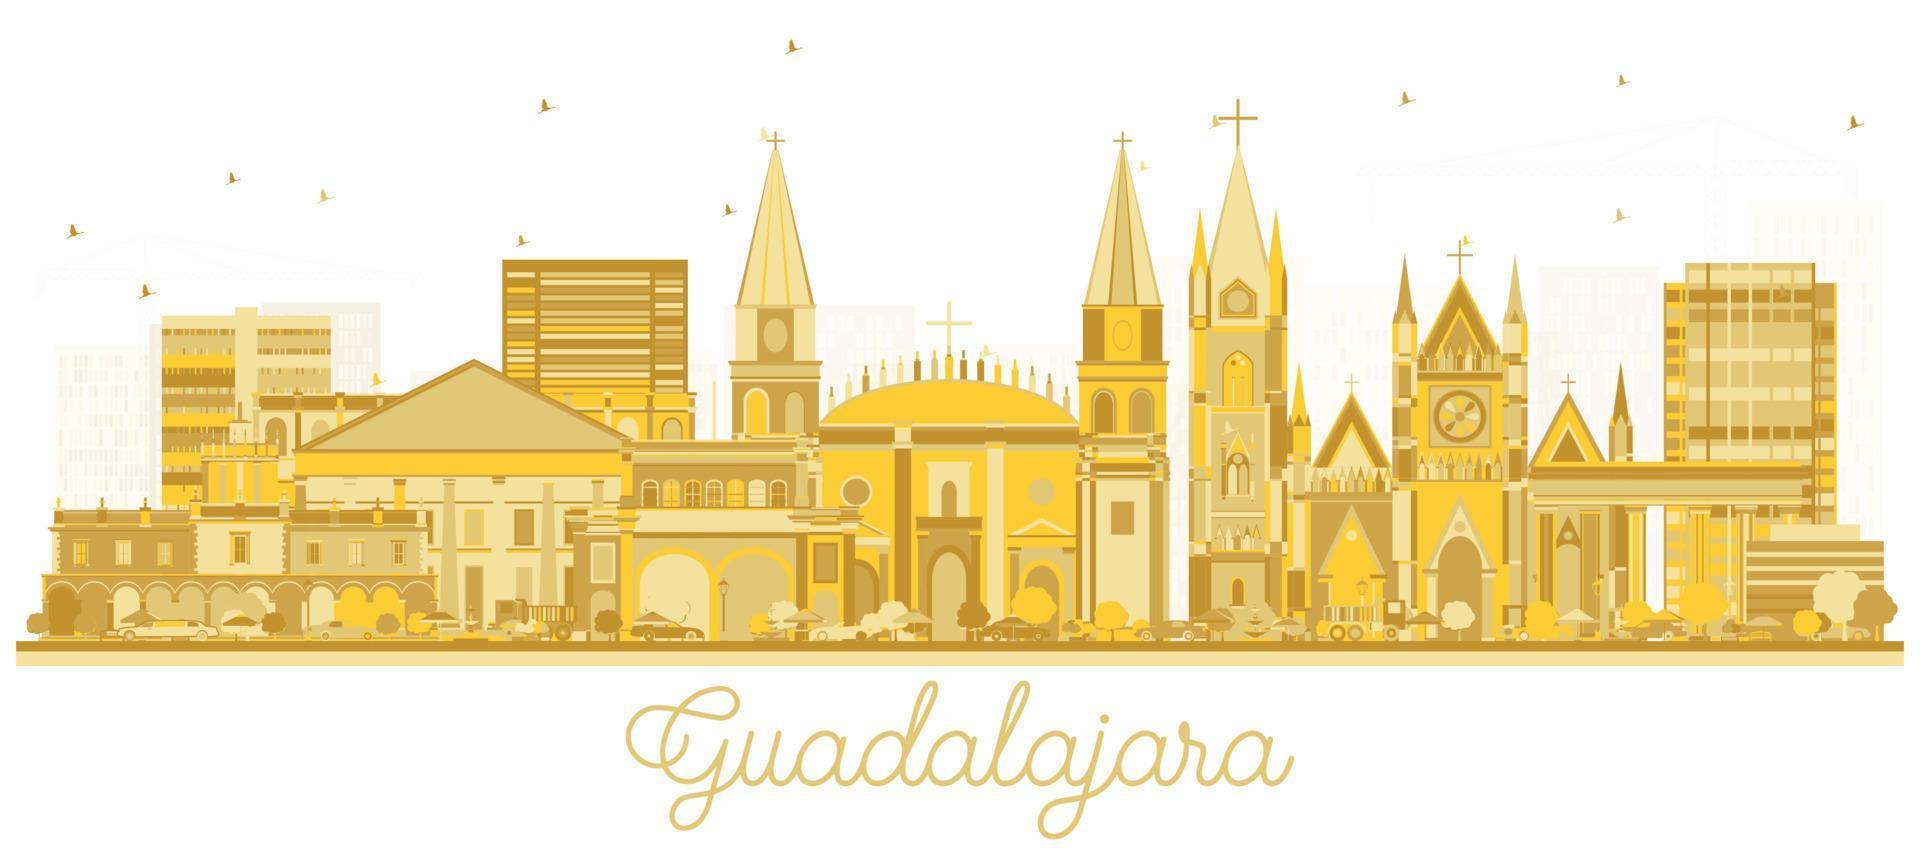 guadalajara mexiko city skyline silhouette mit goldenen gebäuden isoliert auf weiß. vektor